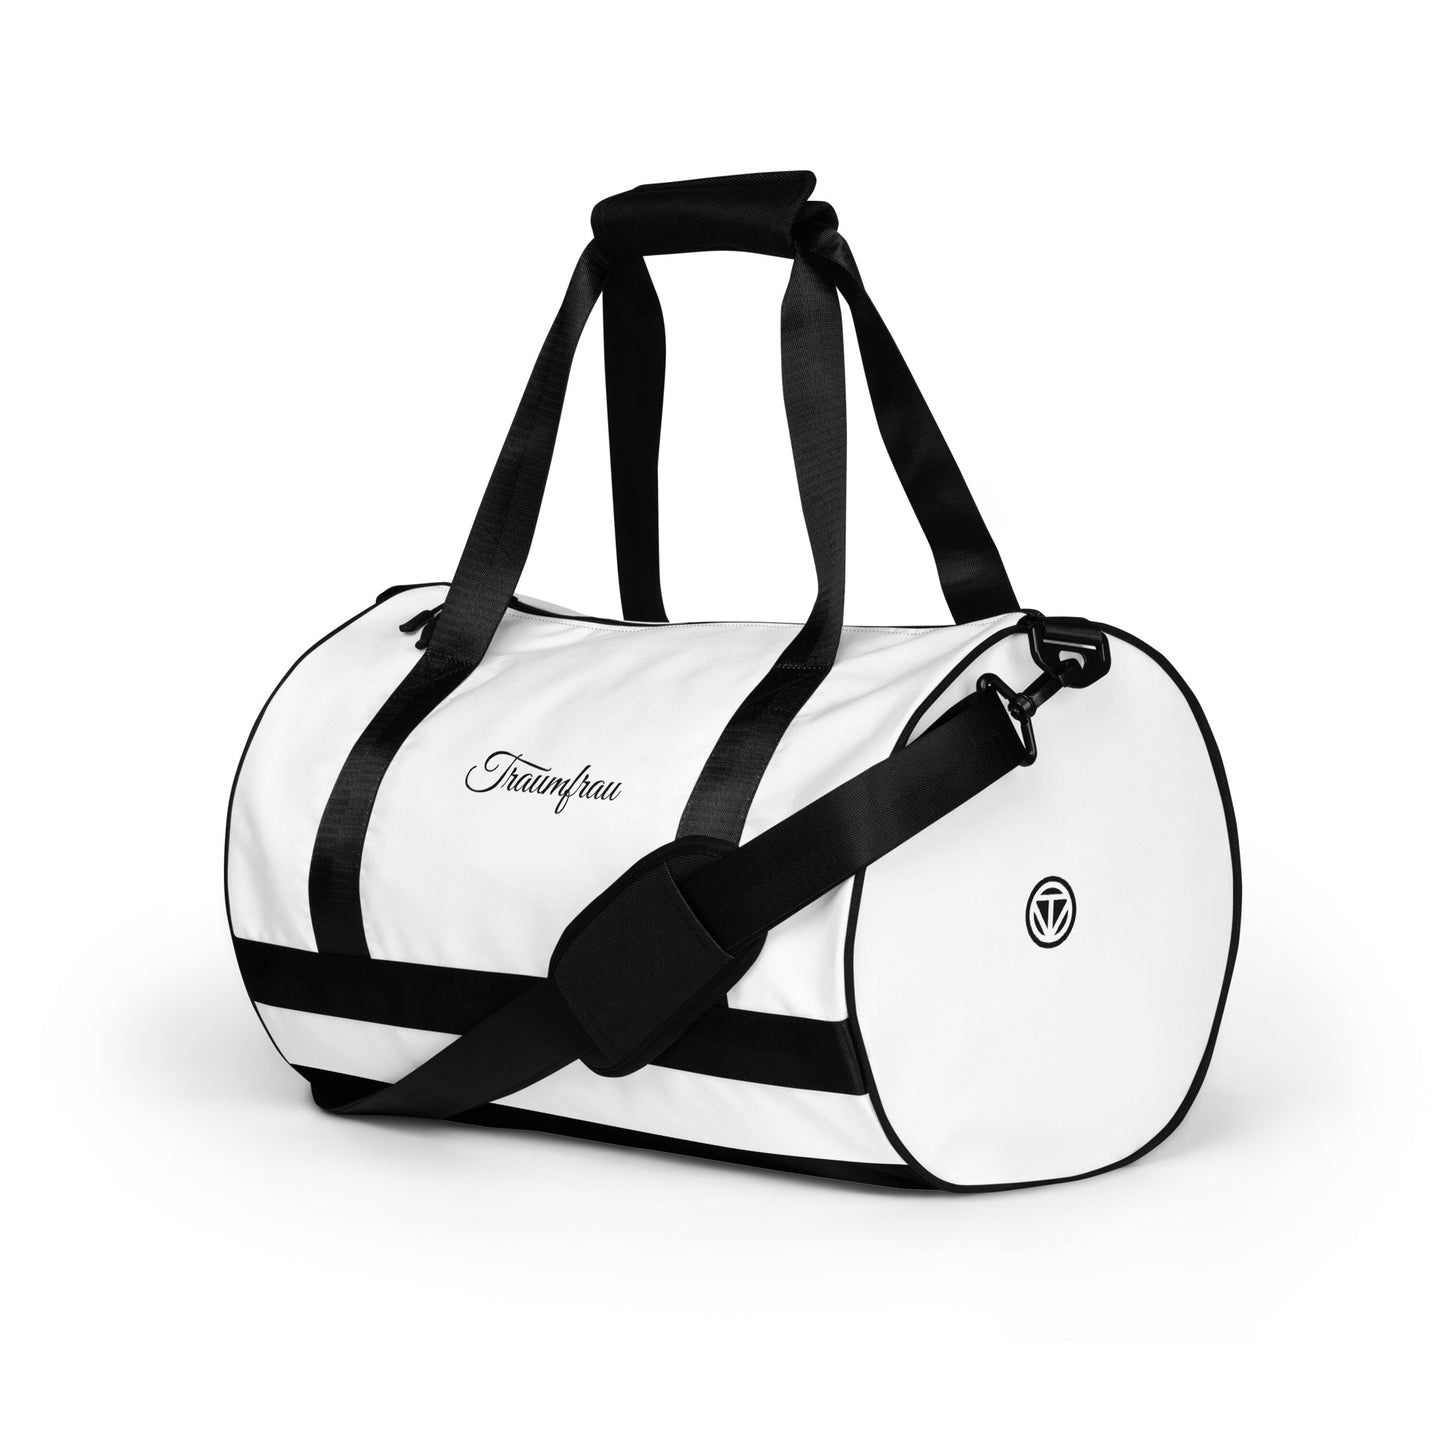 TIME OF VIBES Sports Bag TRAUMFRAU (White/Black) - €80.00